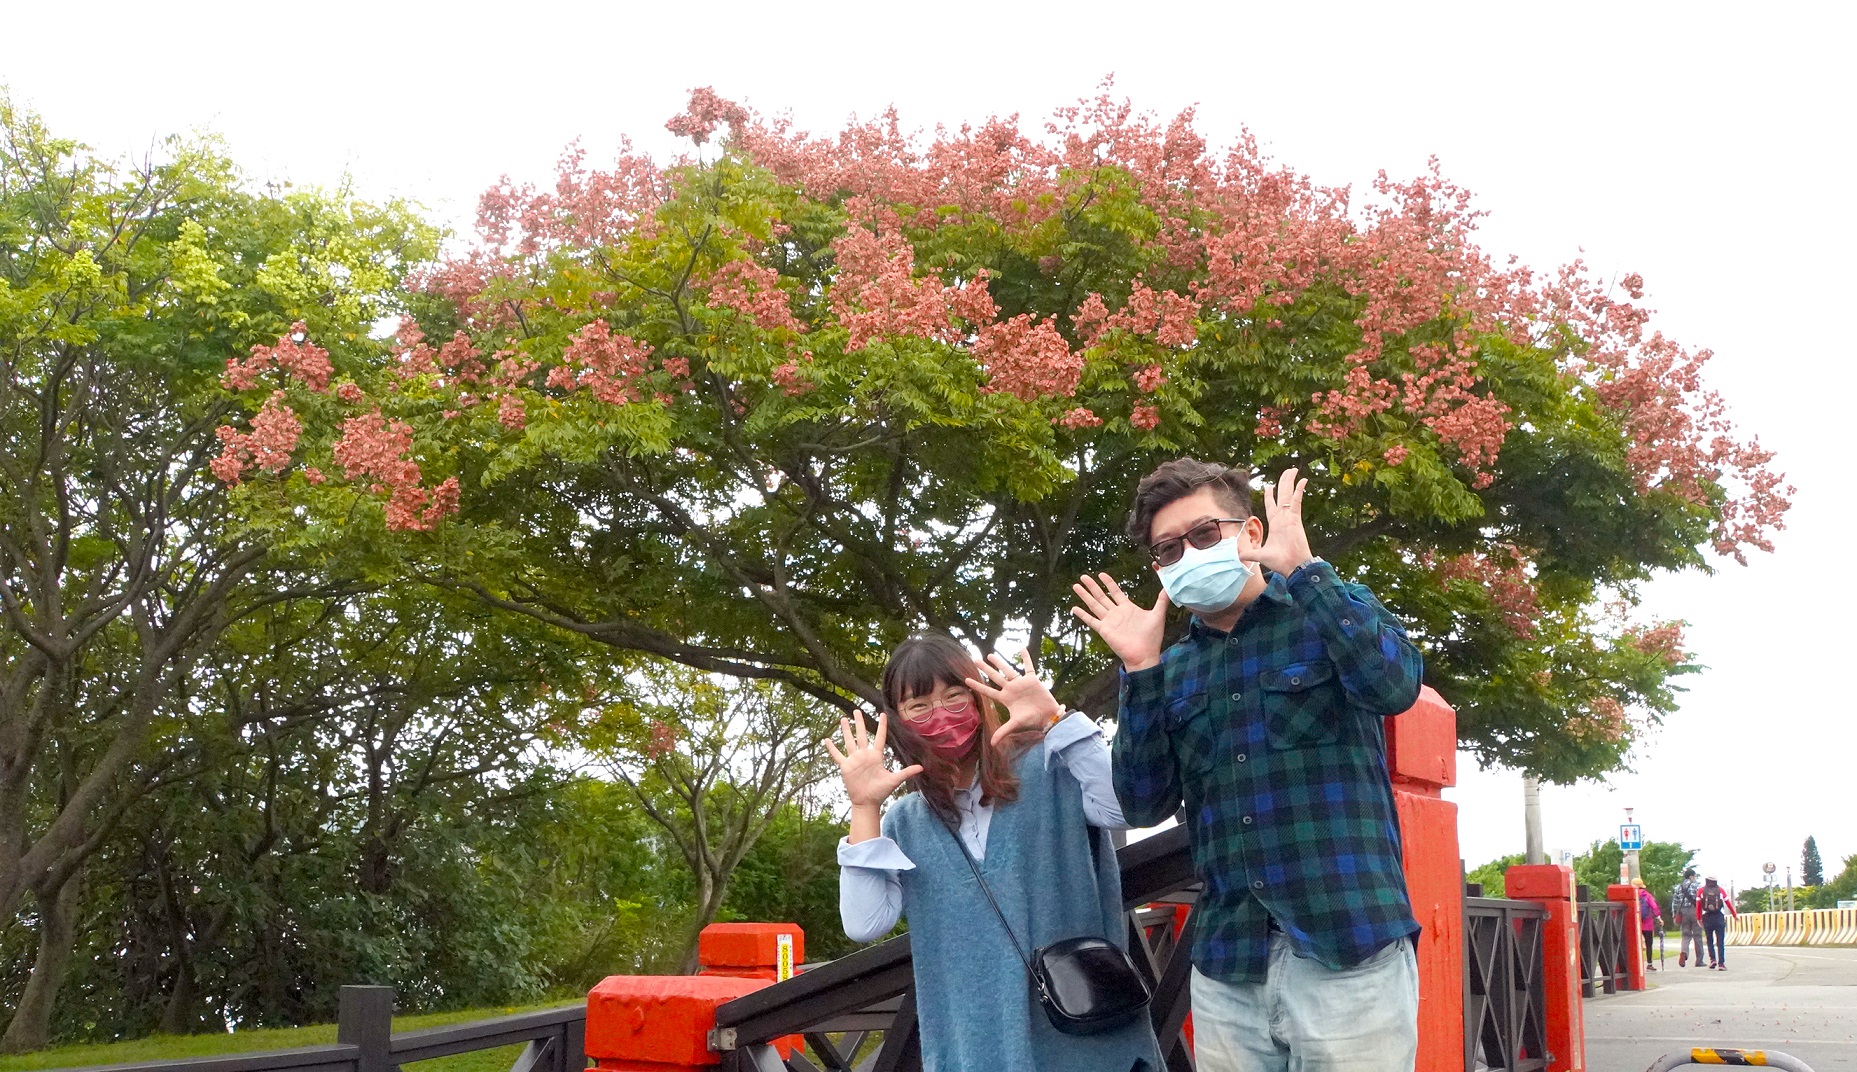 歡樂趣味的與蒴果滿滿的臺灣欒樹來一張合照